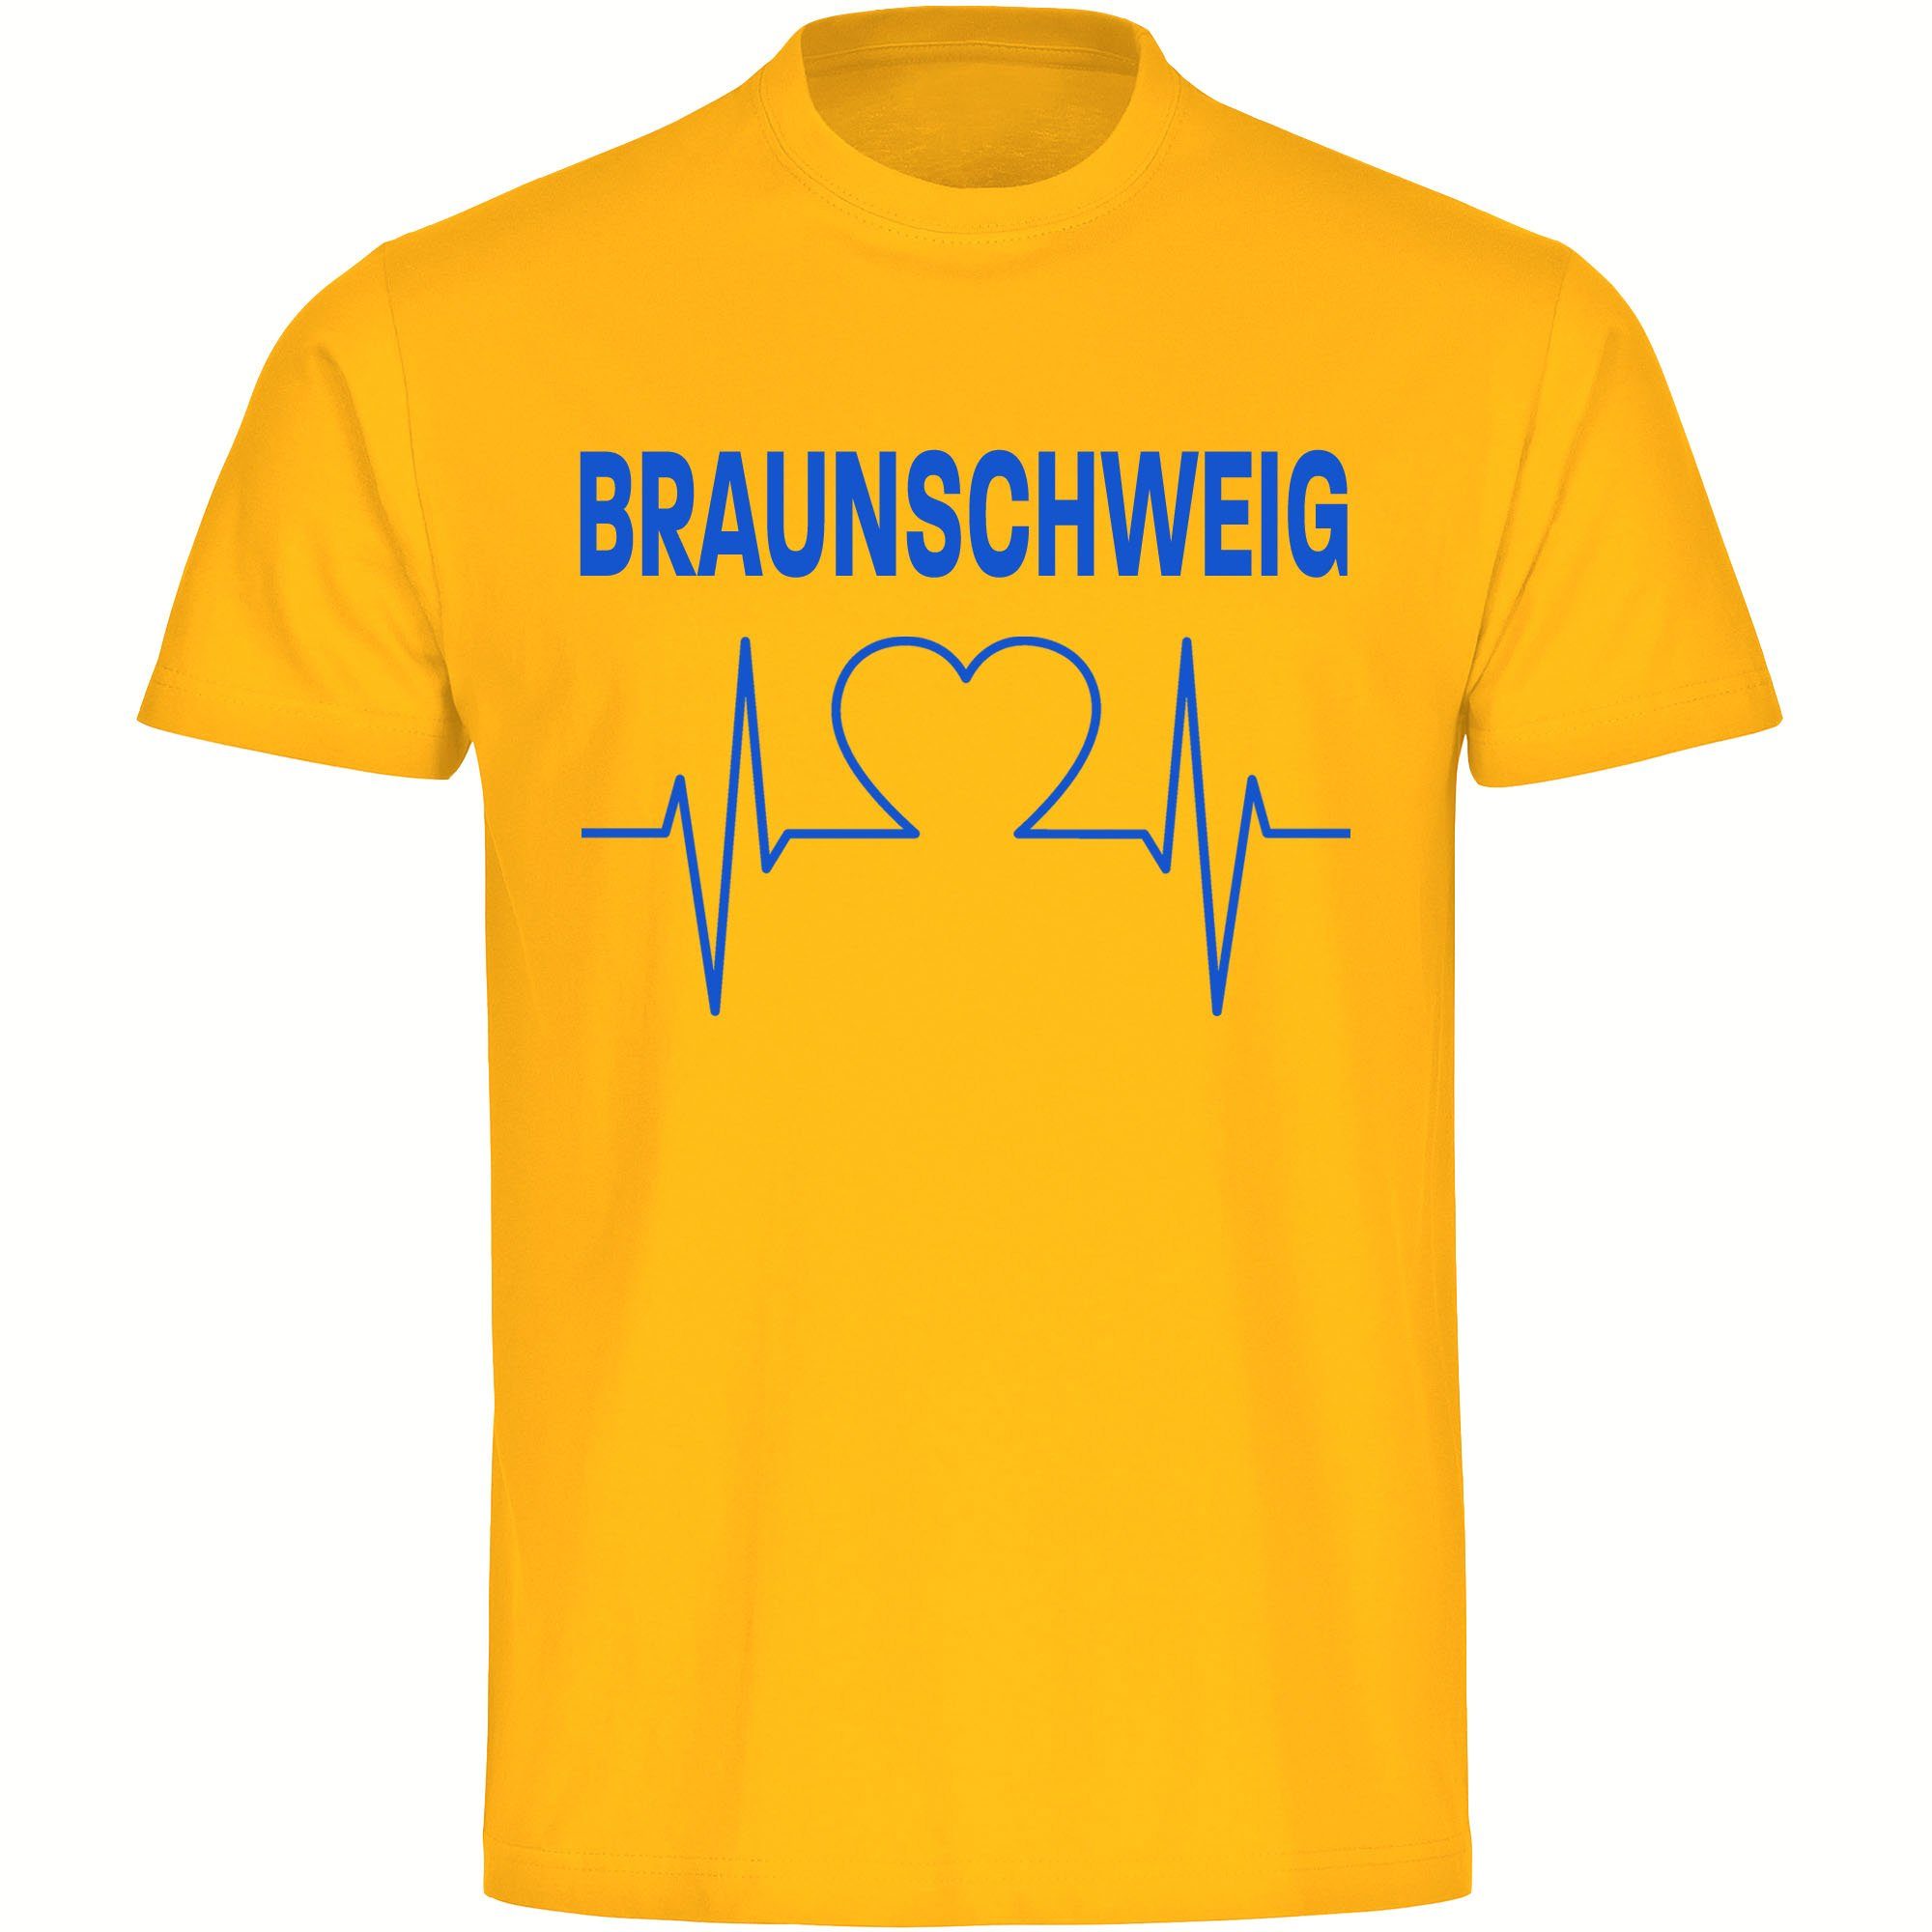 multifanshop T-Shirt Kinder Braunschweig - Herzschlag - Boy Girl